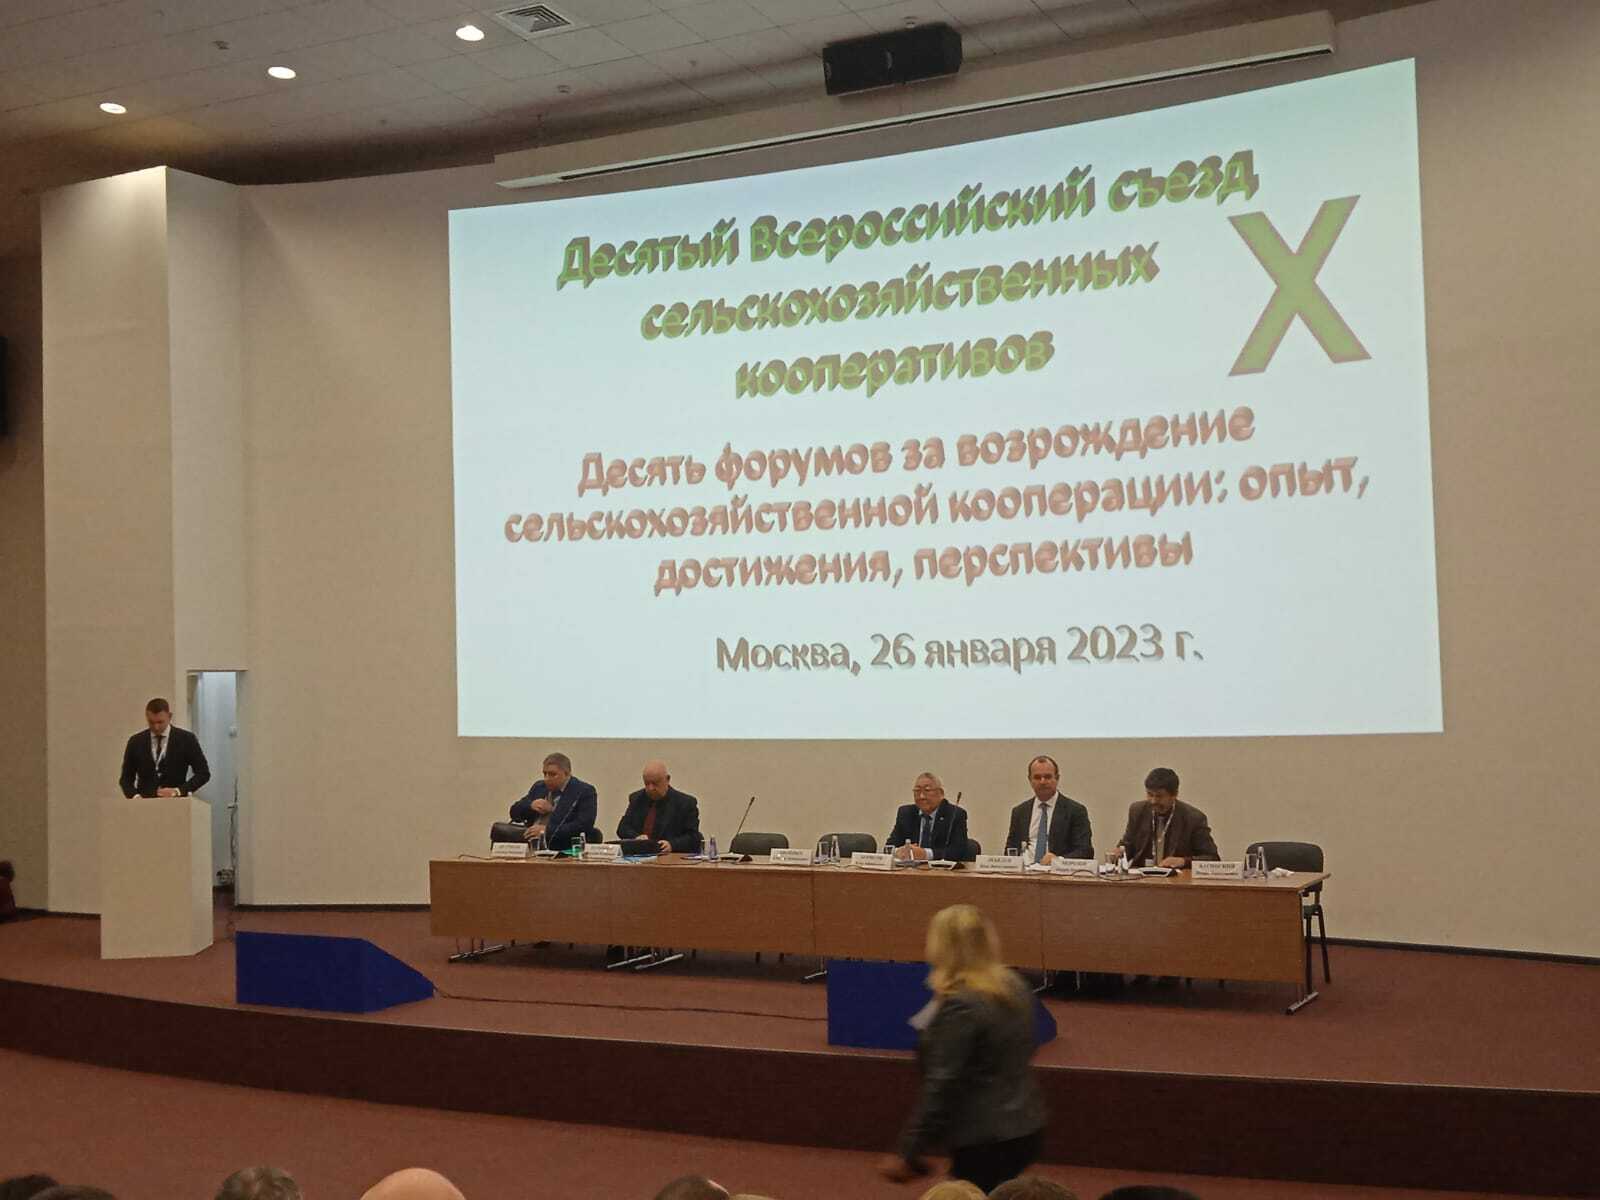 Делегация из Башкирии приняла участие во Всероссийском съезде сельхозкооперативов в г.Москва